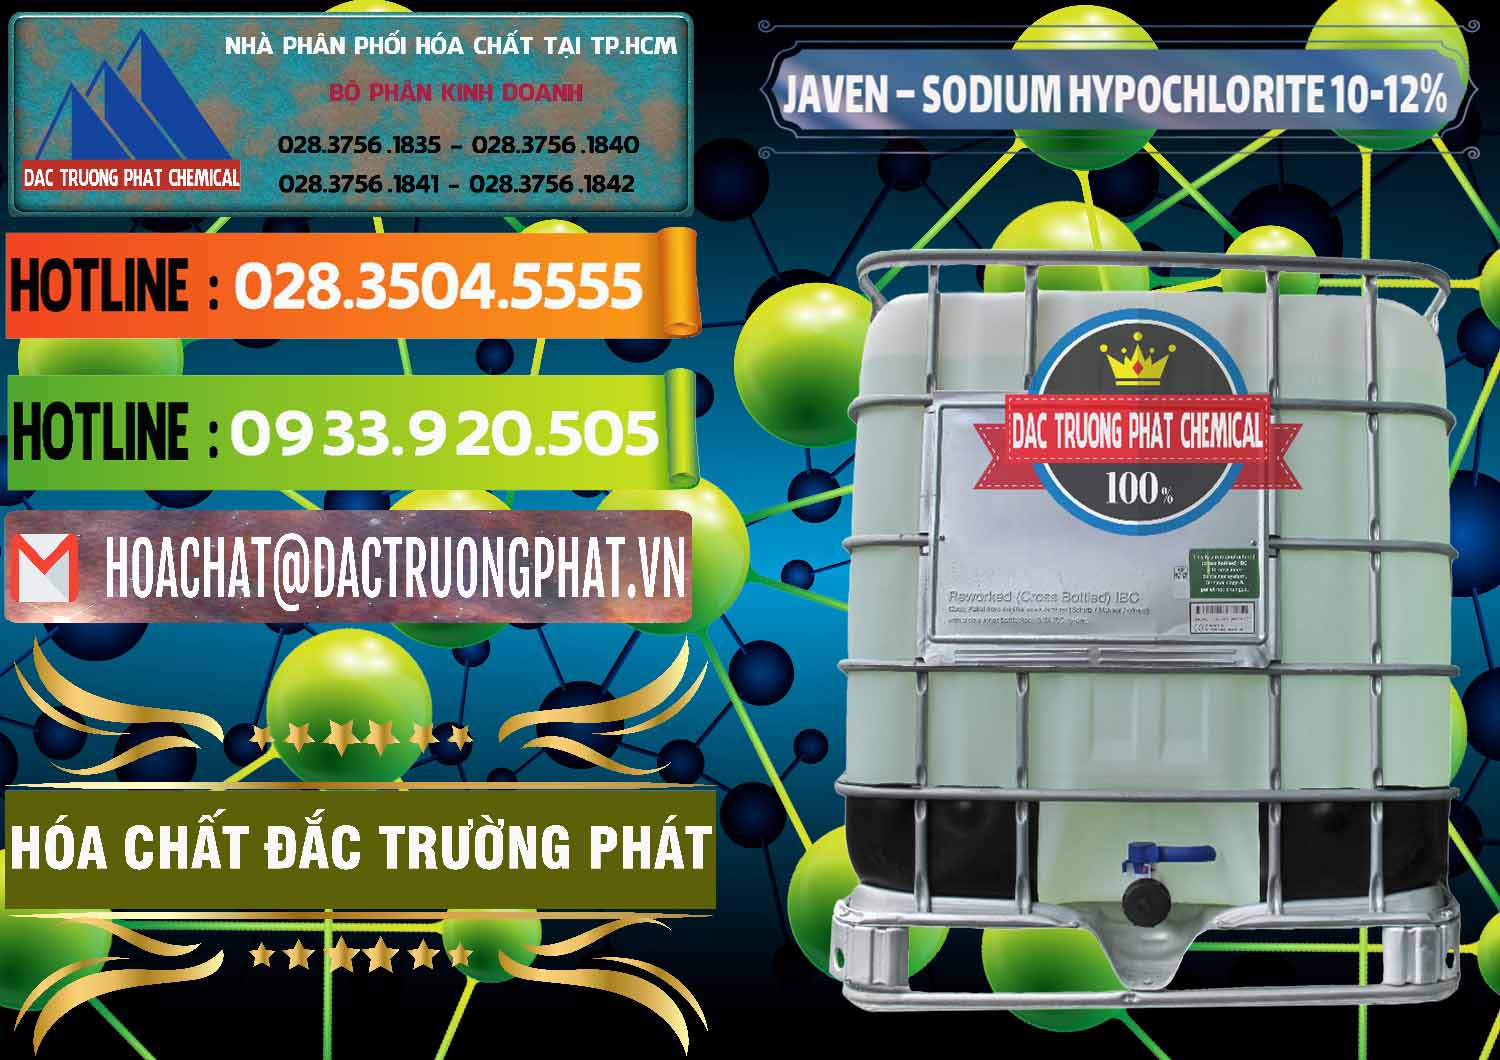 Chuyên bán _ phân phối Javen - Sodium Hypochlorite 10-12% Việt Nam - 0188 - Cty phân phối - kinh doanh hóa chất tại TP.HCM - cungcaphoachat.com.vn